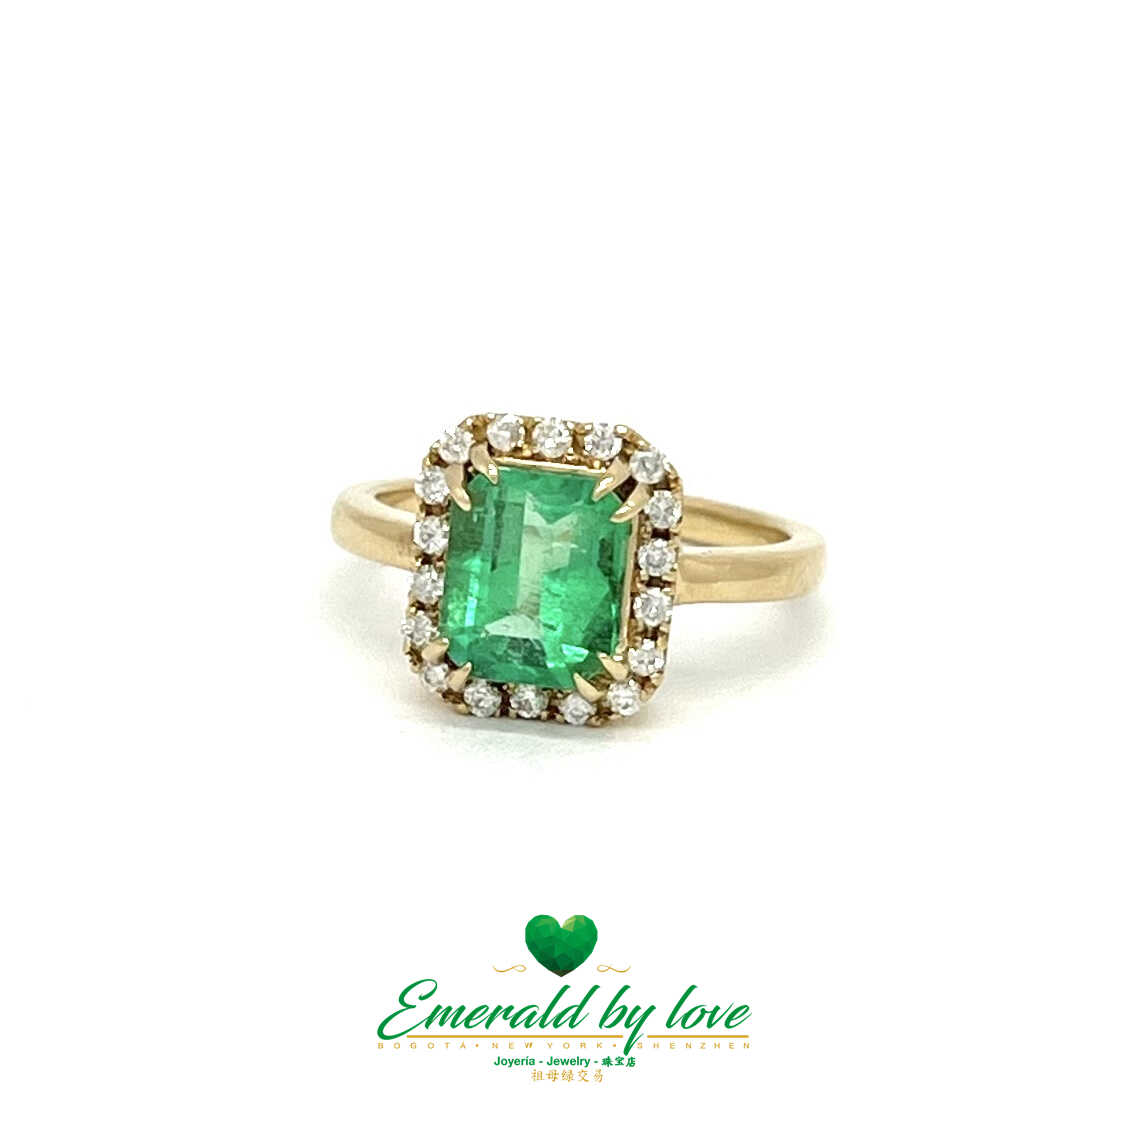 Anillo de compromiso con esmeralda: piedra central de 2,1 quilates rodeada de diamantes